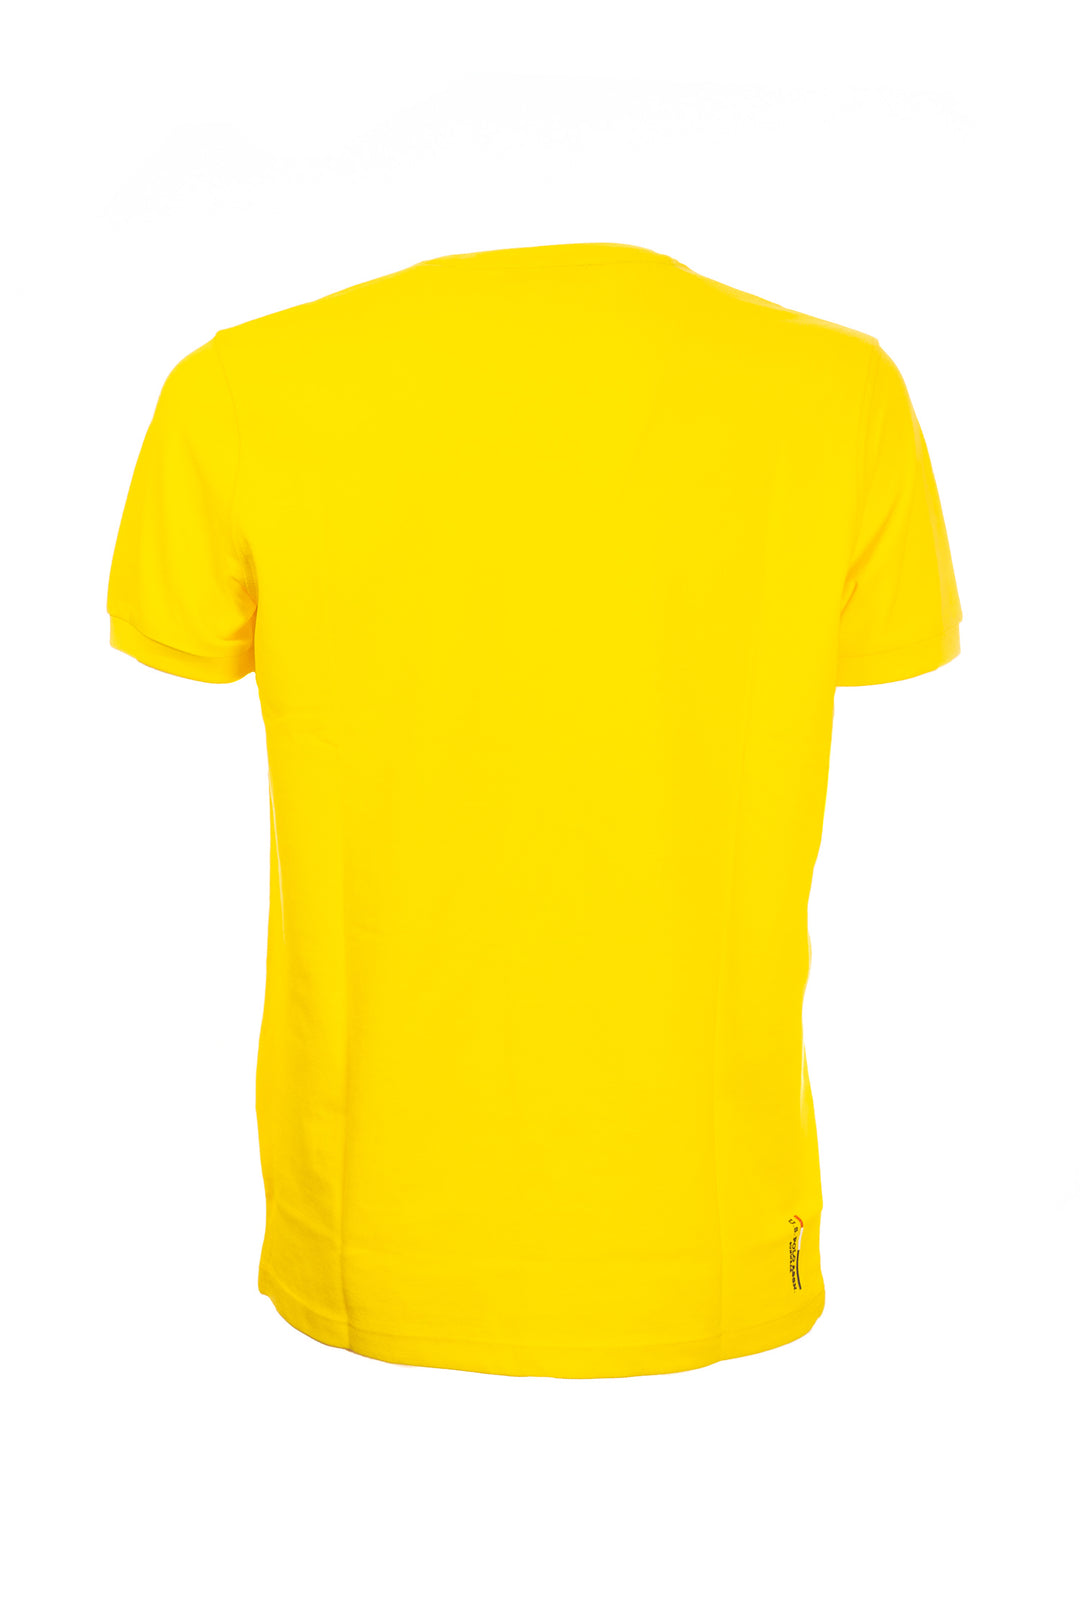 U.S. POLO ASSN. BEACHWEAR T-shirt gialla in cotone con logo ricamato - Mancinelli 1954